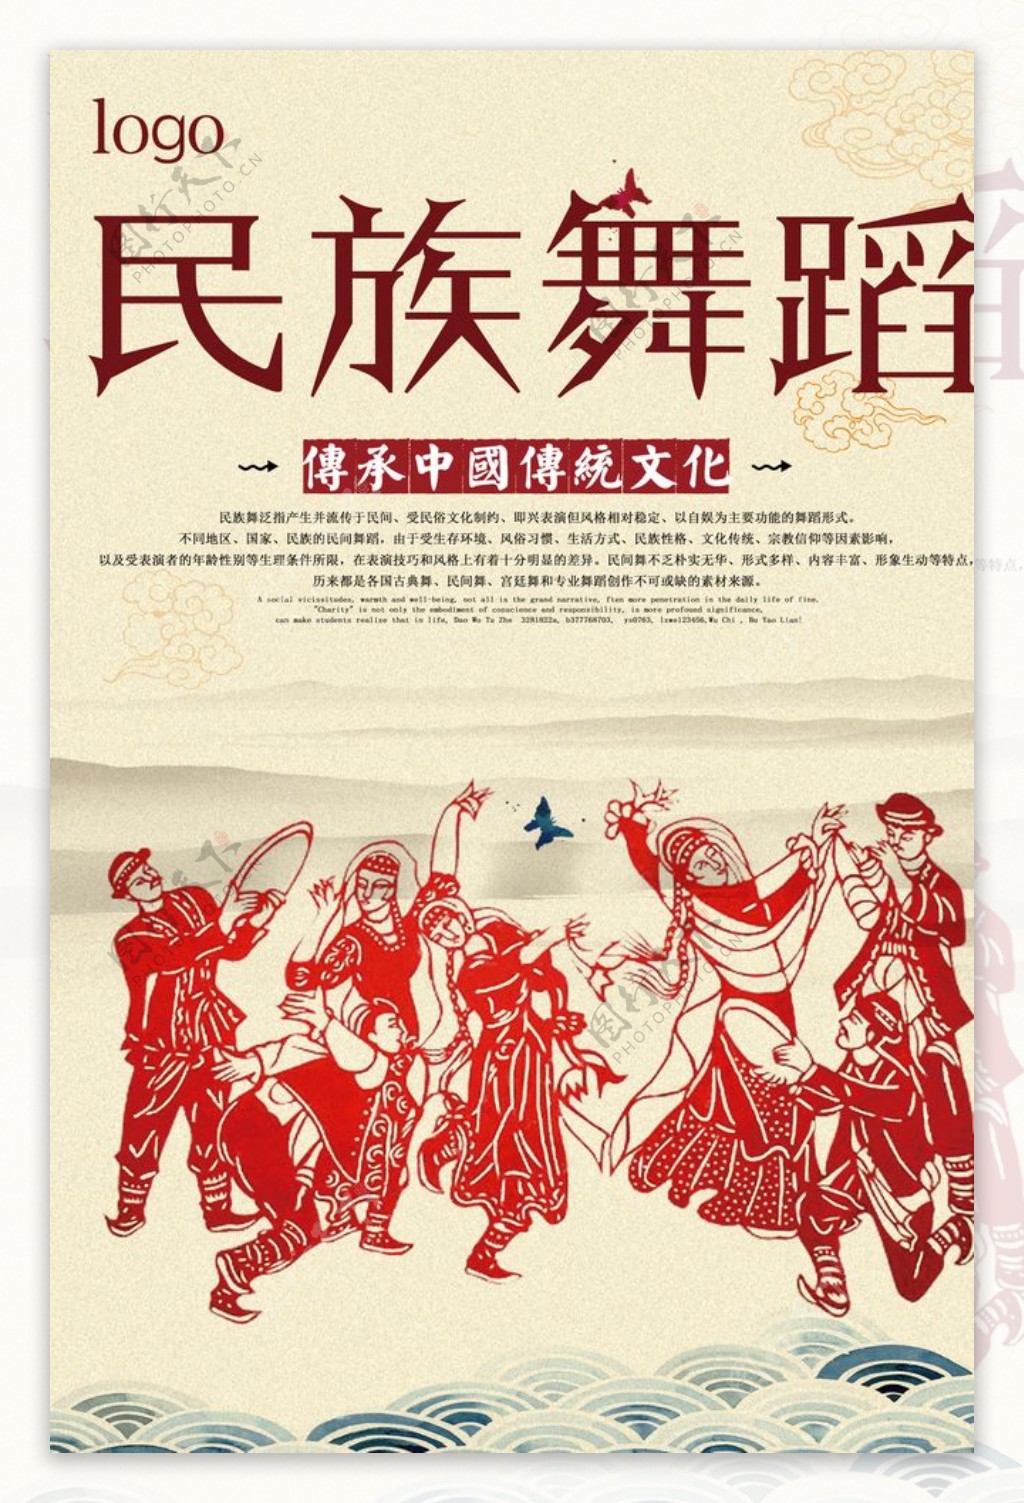 民族舞蹈宣传海报图片